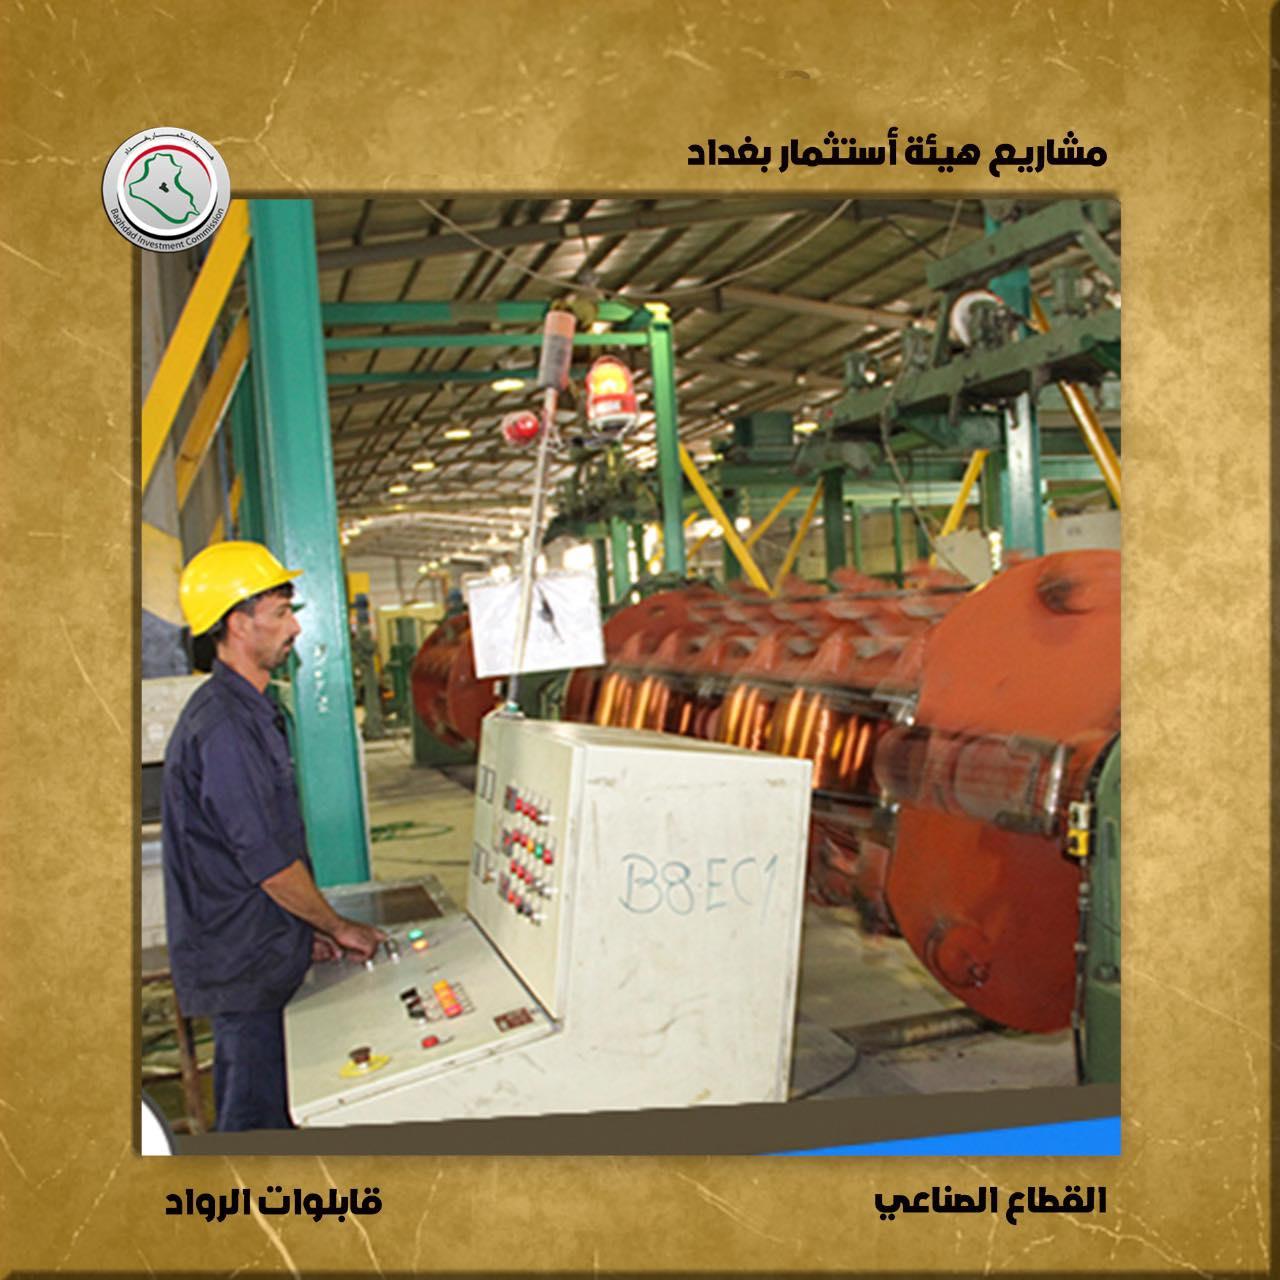 إستثمار بغداد : ( ٤٤ ) مشروع إستثماري متميز ينعش القطاع الصناعي ويسير به نحو تحقيق ال